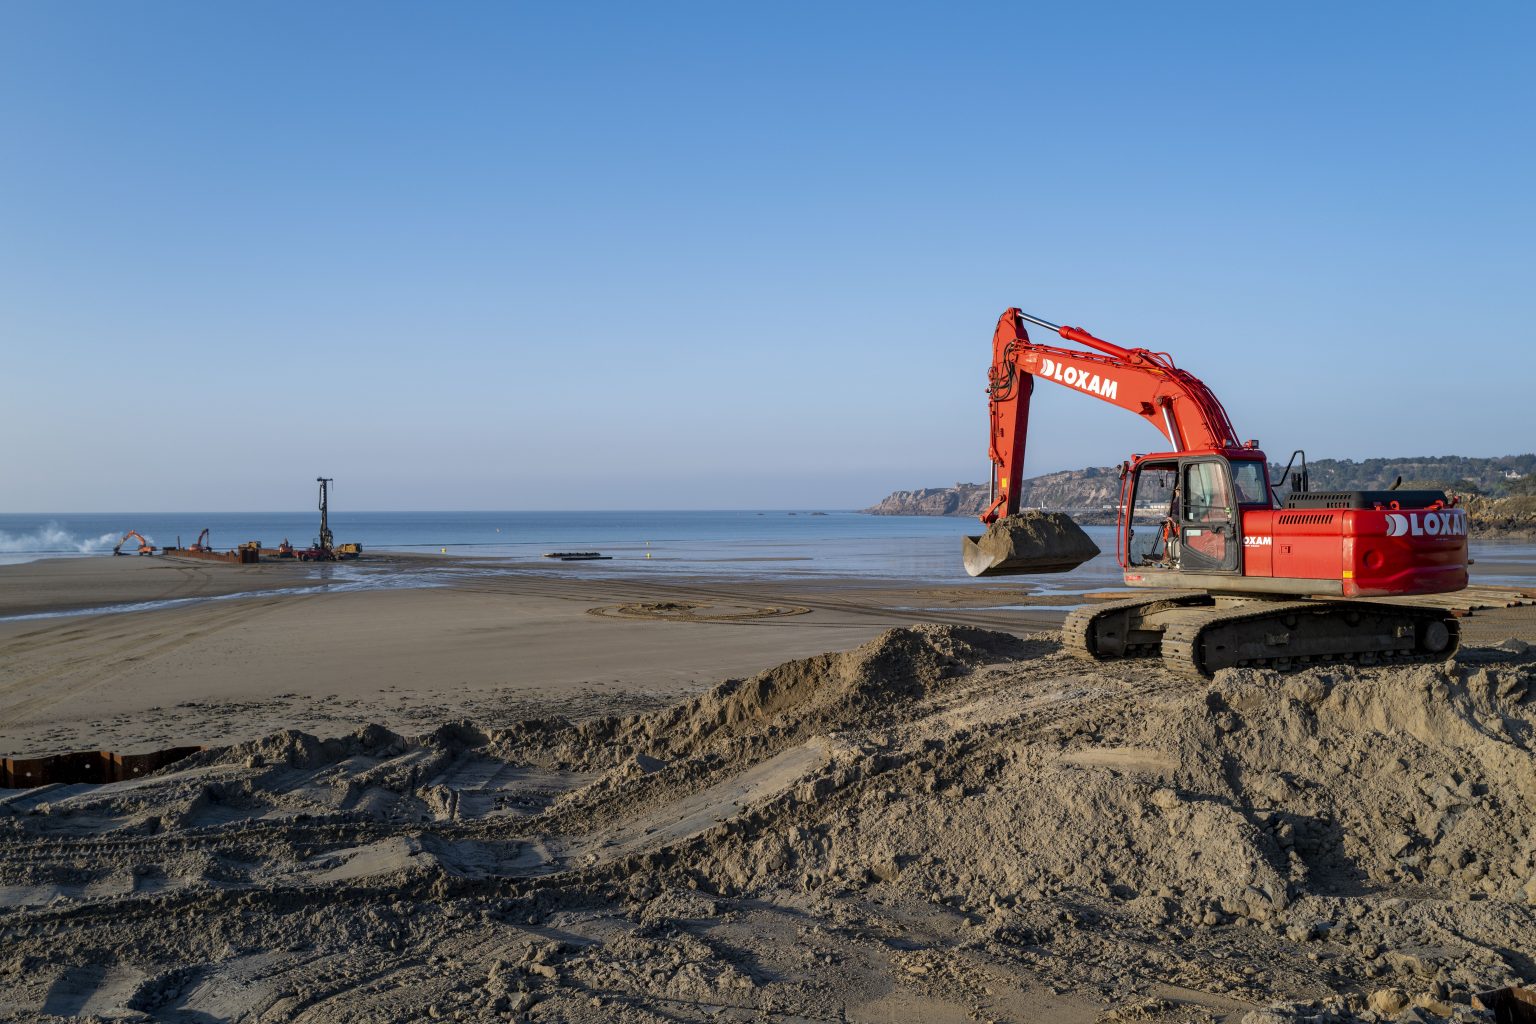 Engins de chantiers sur la plage de Caroual à Erquy dans le cadre des travaux réalisés pour implanter des éoliennes "off shore"
plage de Caroual
Erquy
Baie de Saint Brieuc
Côtes d'Armor
Bretagne
janvier 2022